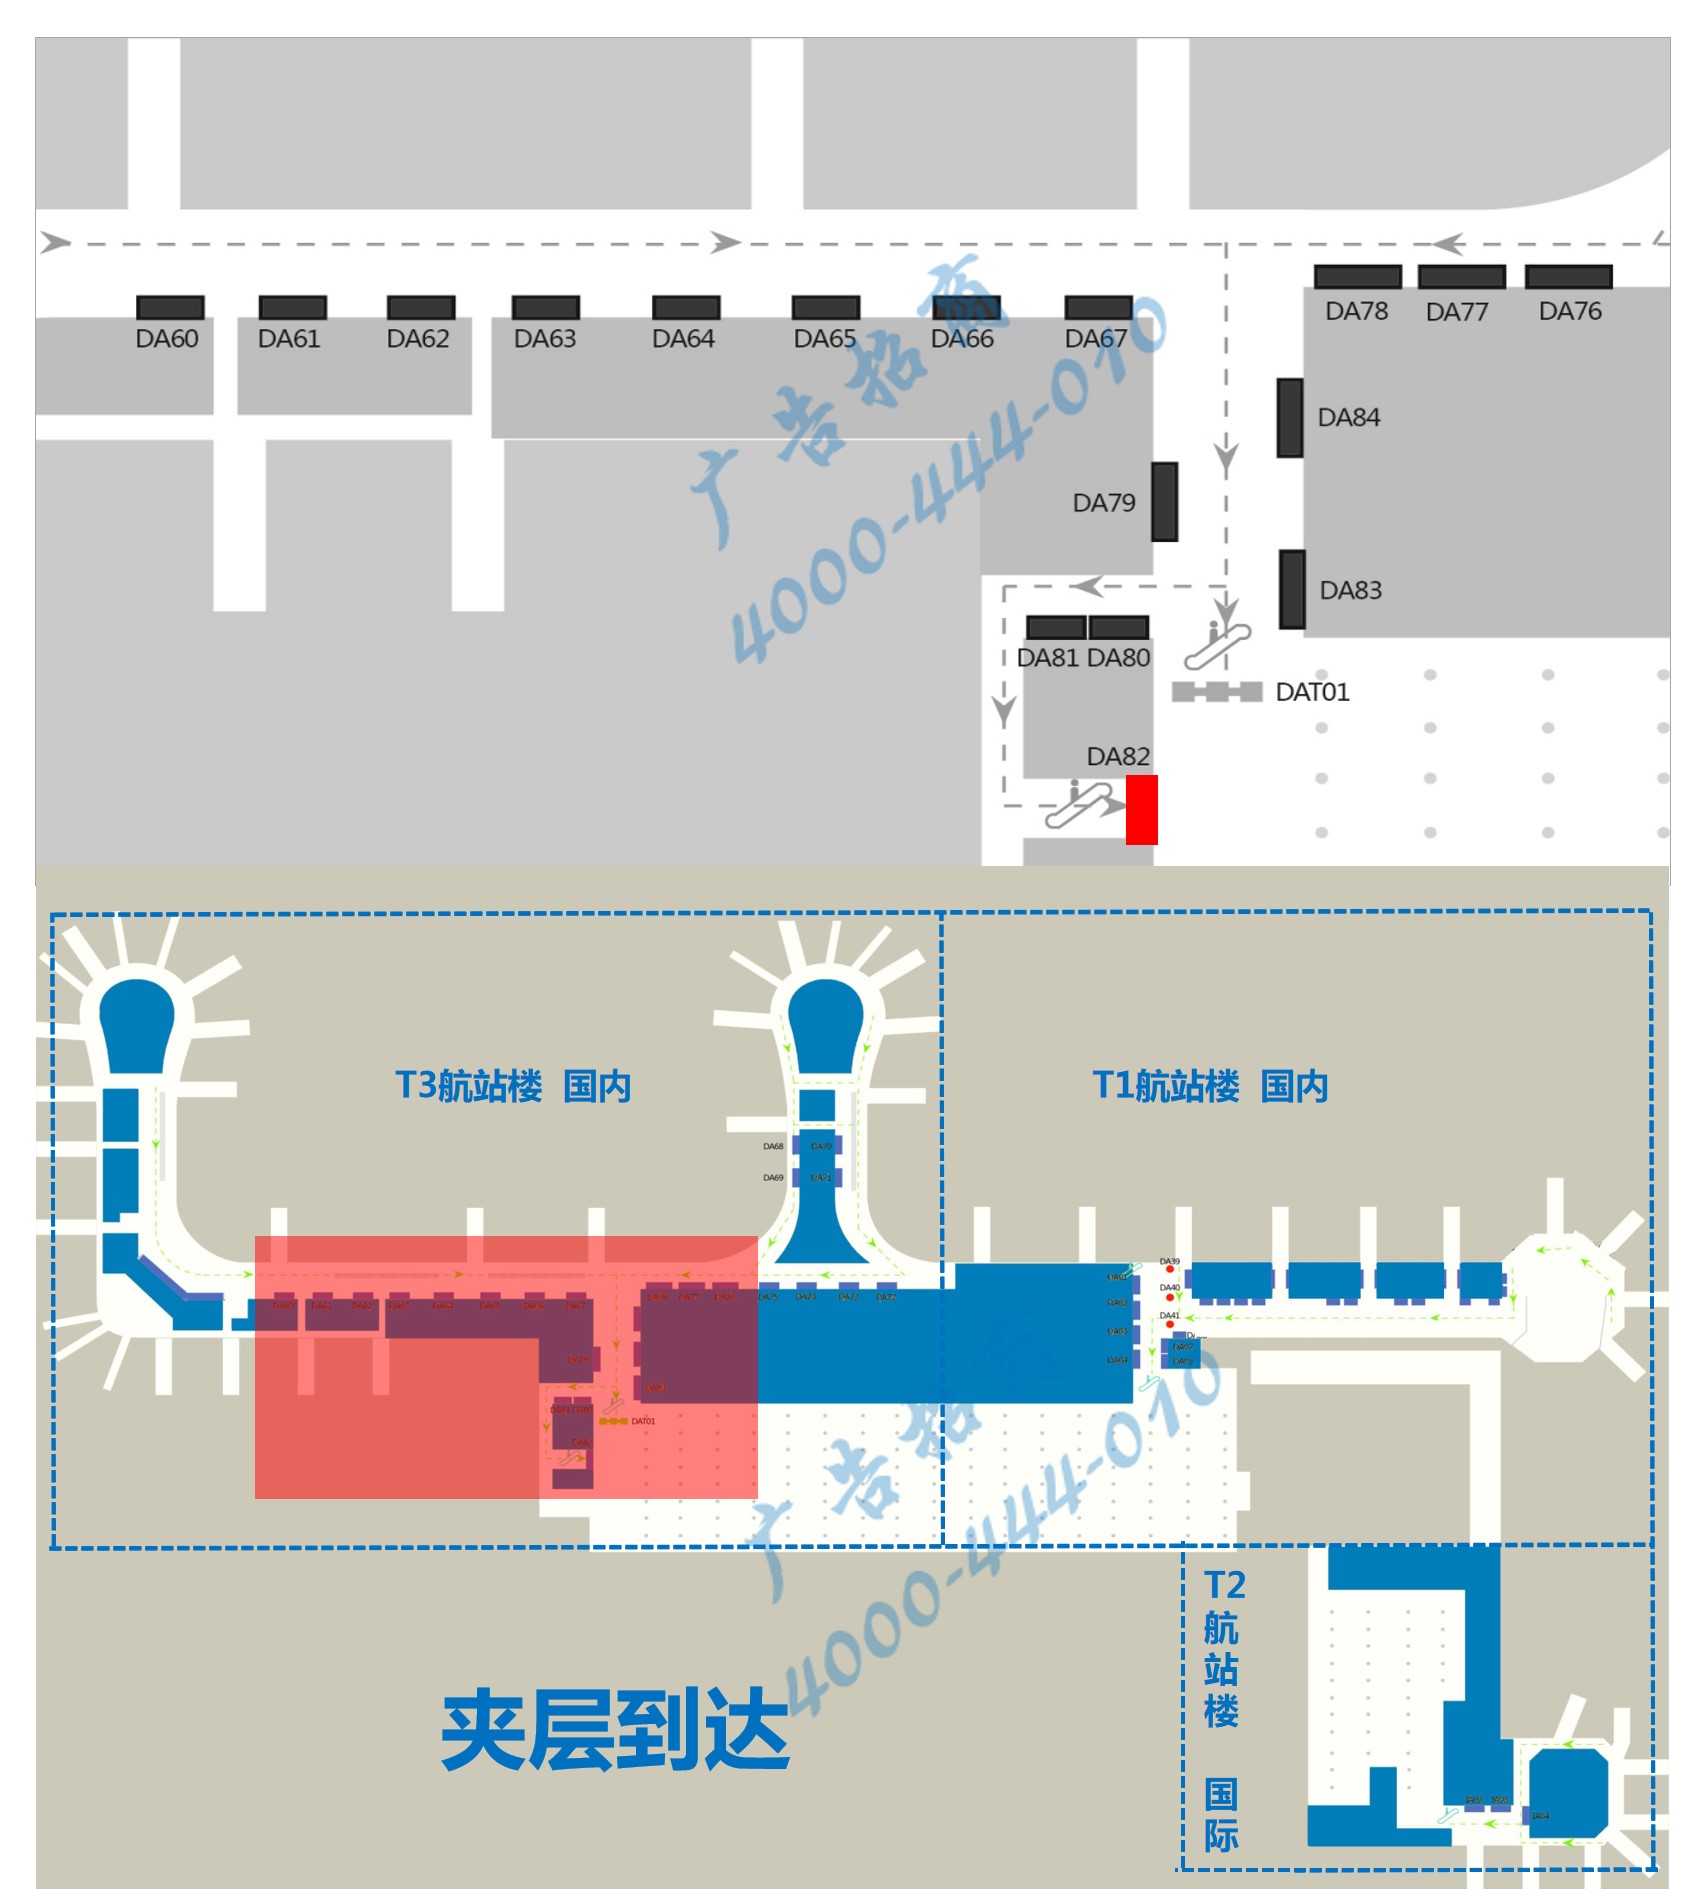 杭州萧山机场广告-T3到达扶梯上方灯箱DA82位置图